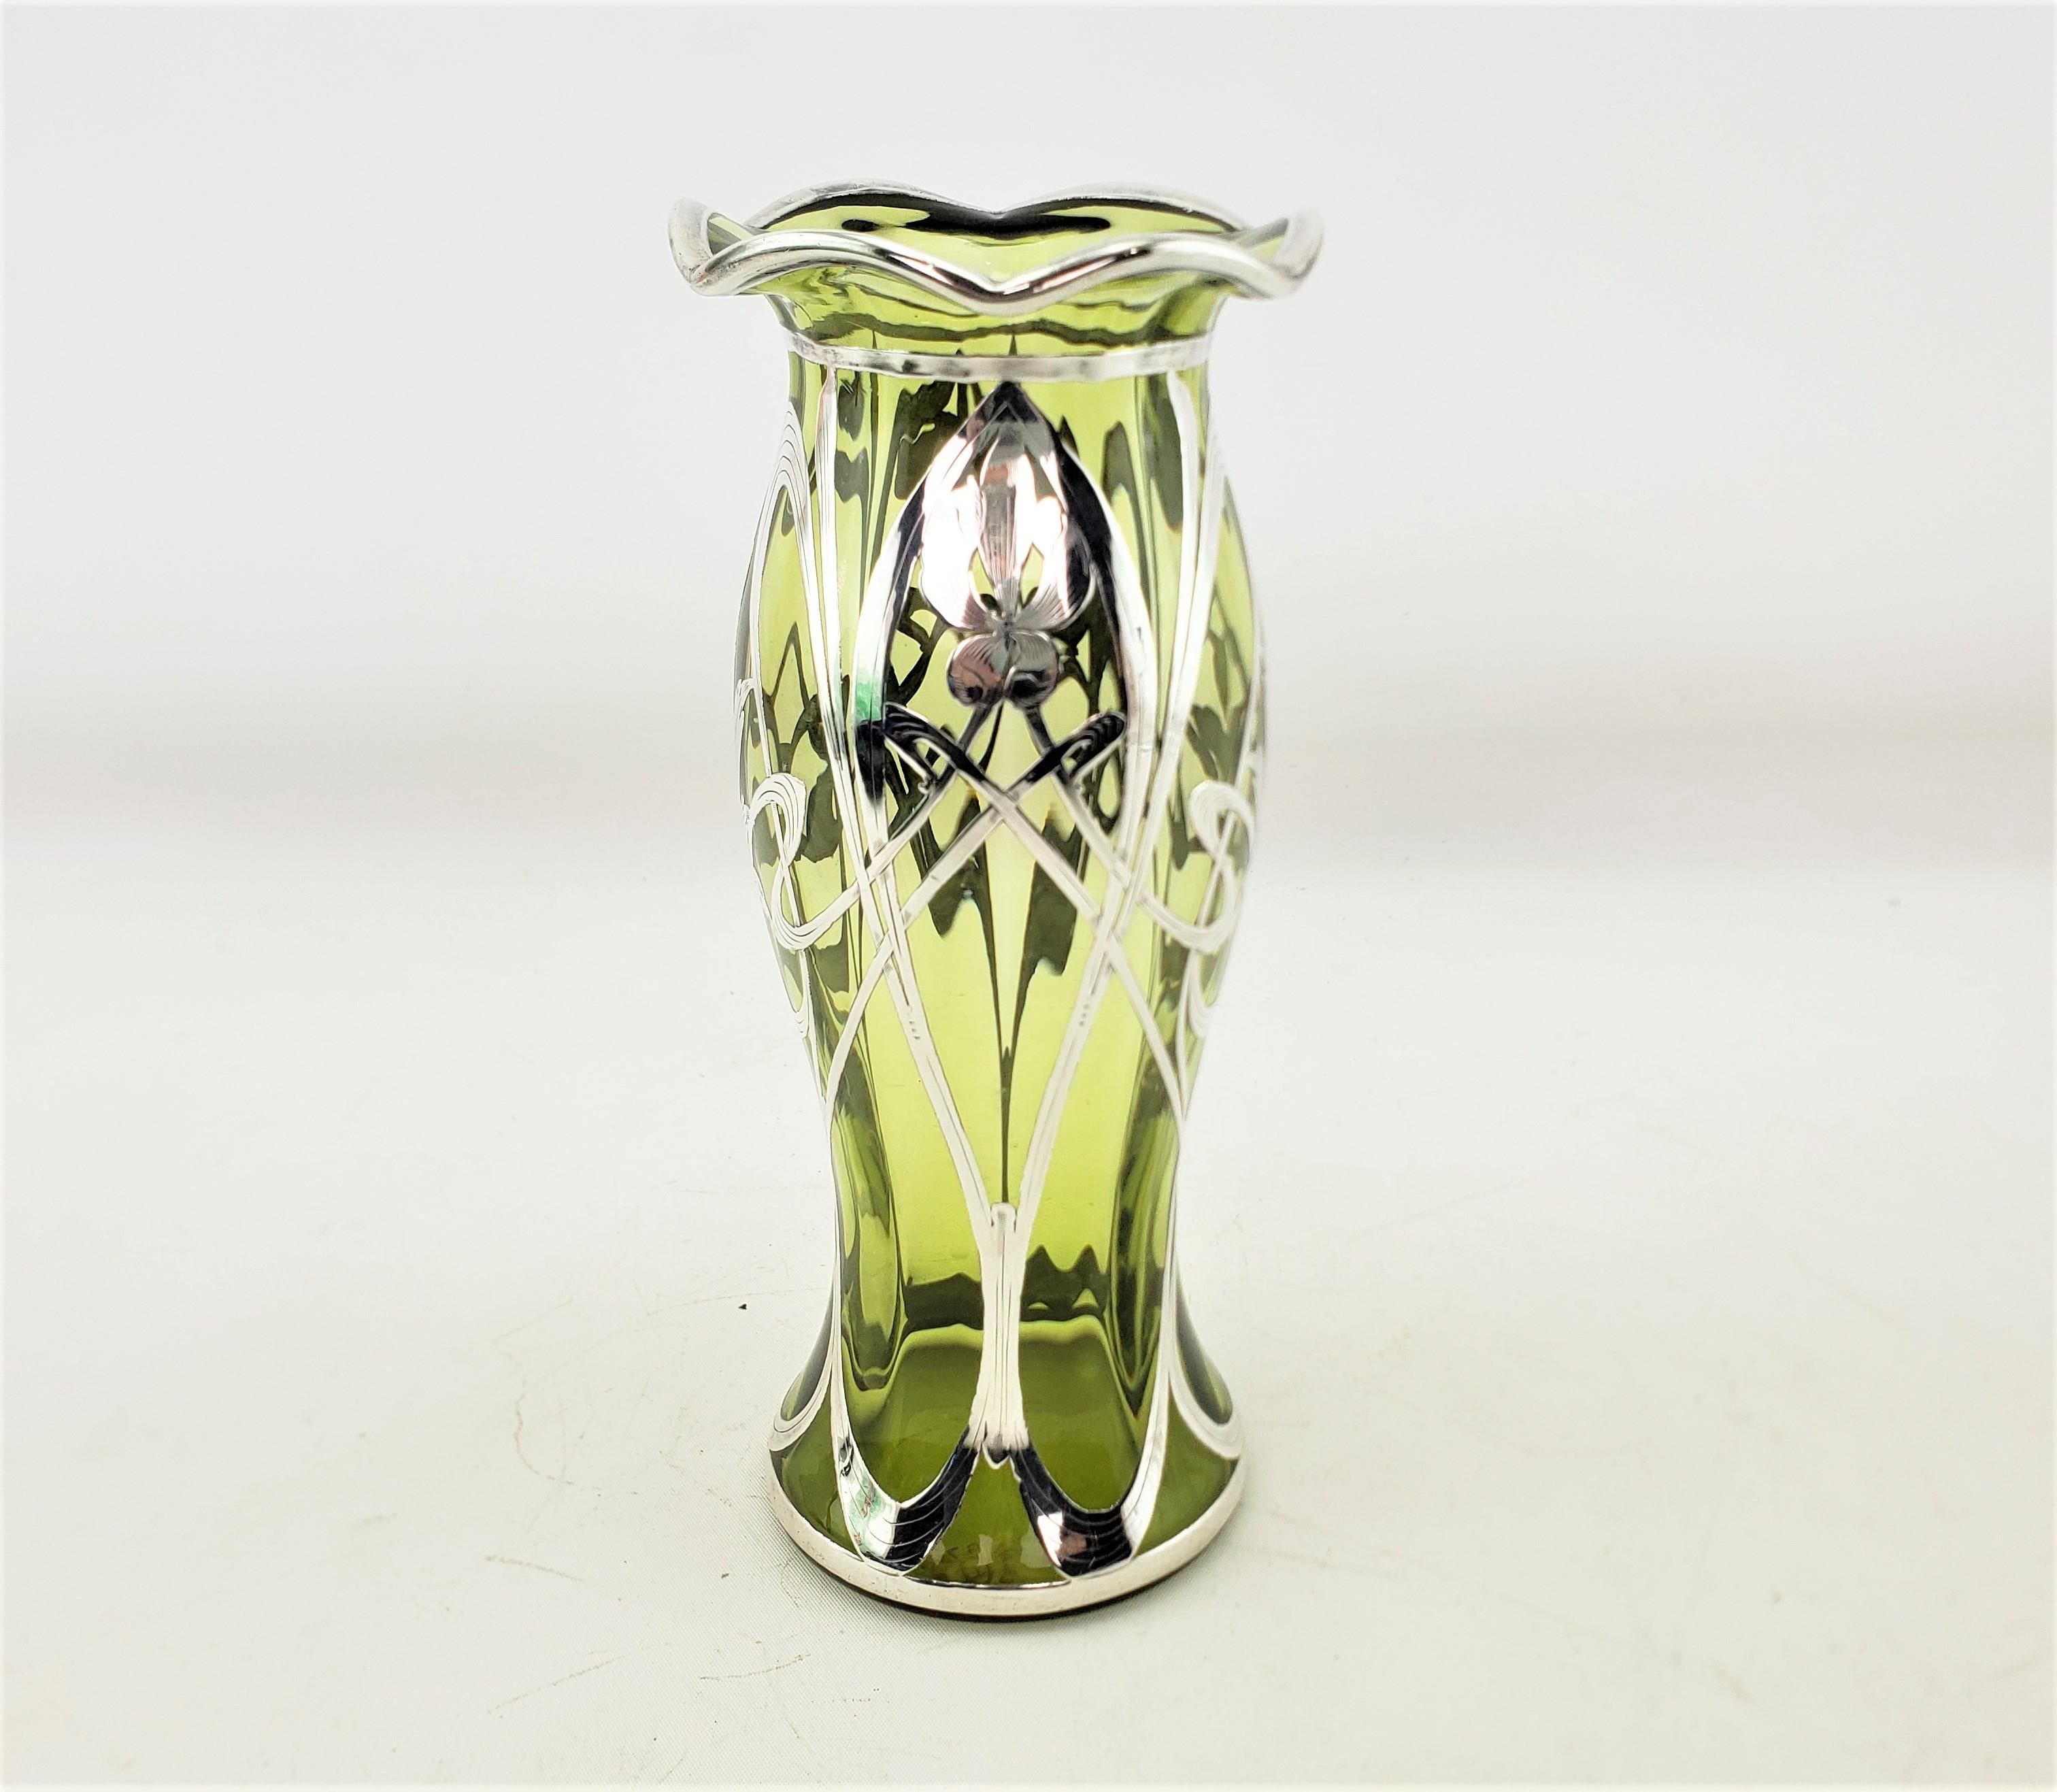 Ce vase ancien n'est pas signé, mais on suppose qu'il provient d'Autriche et qu'il date d'environ 1900. Il est réalisé dans le style Art nouveau de l'époque. Le vase est composé d'un vase en verre d'art vert pâle avec un bord en croûte de tarte et